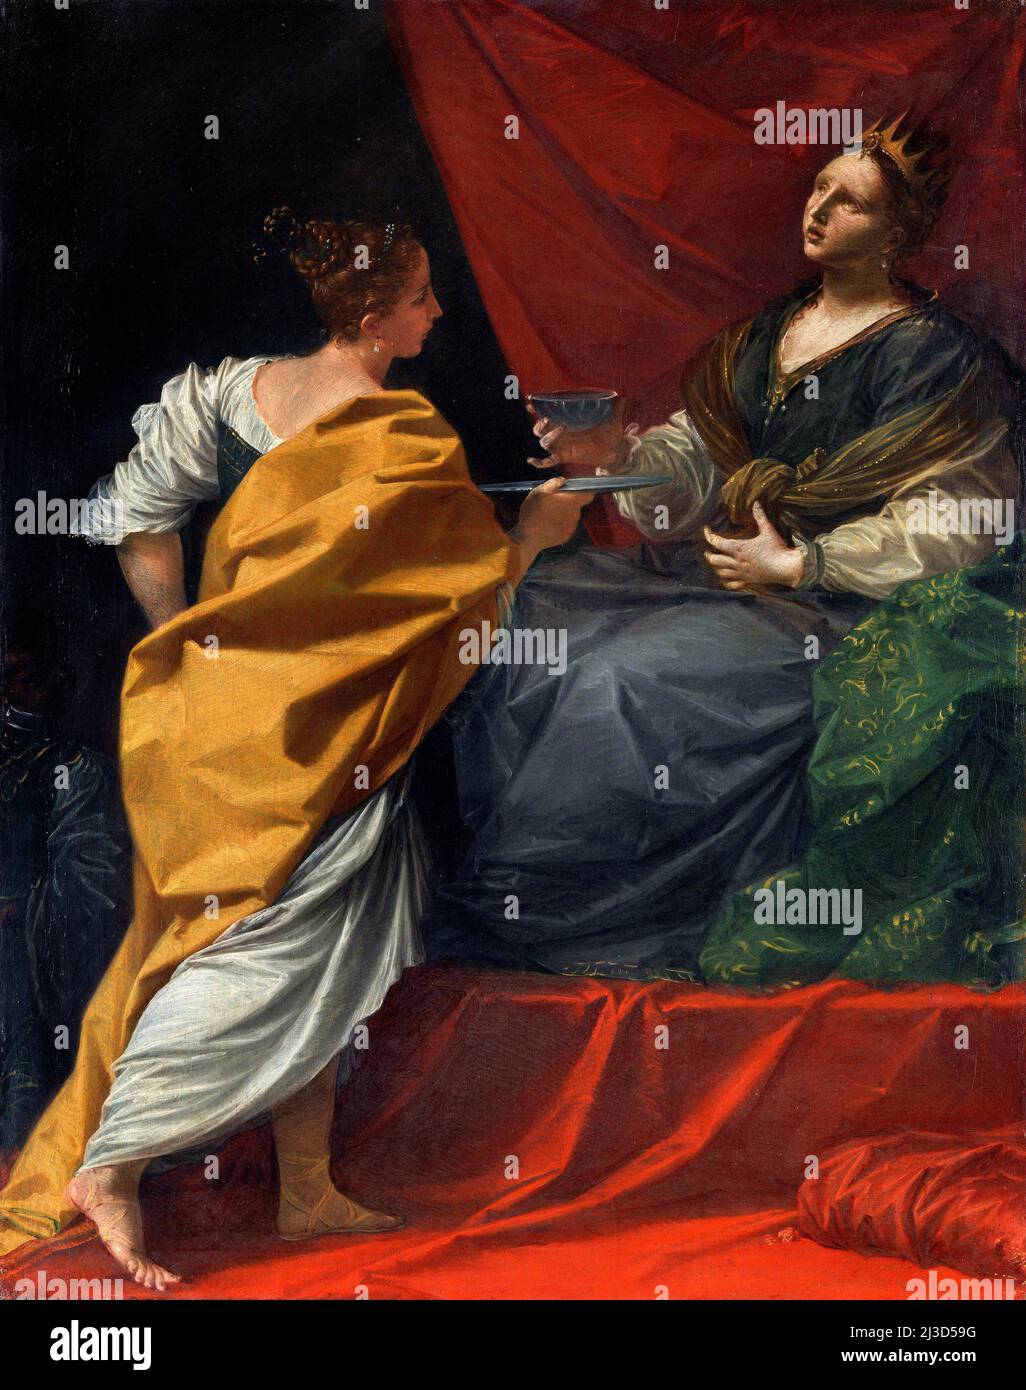 Artemisia boire les cendres de Mausolus par l'artiste italien rococo Donato Certi (1671-1749), huile sur toile, c. 1713/14 Banque D'Images